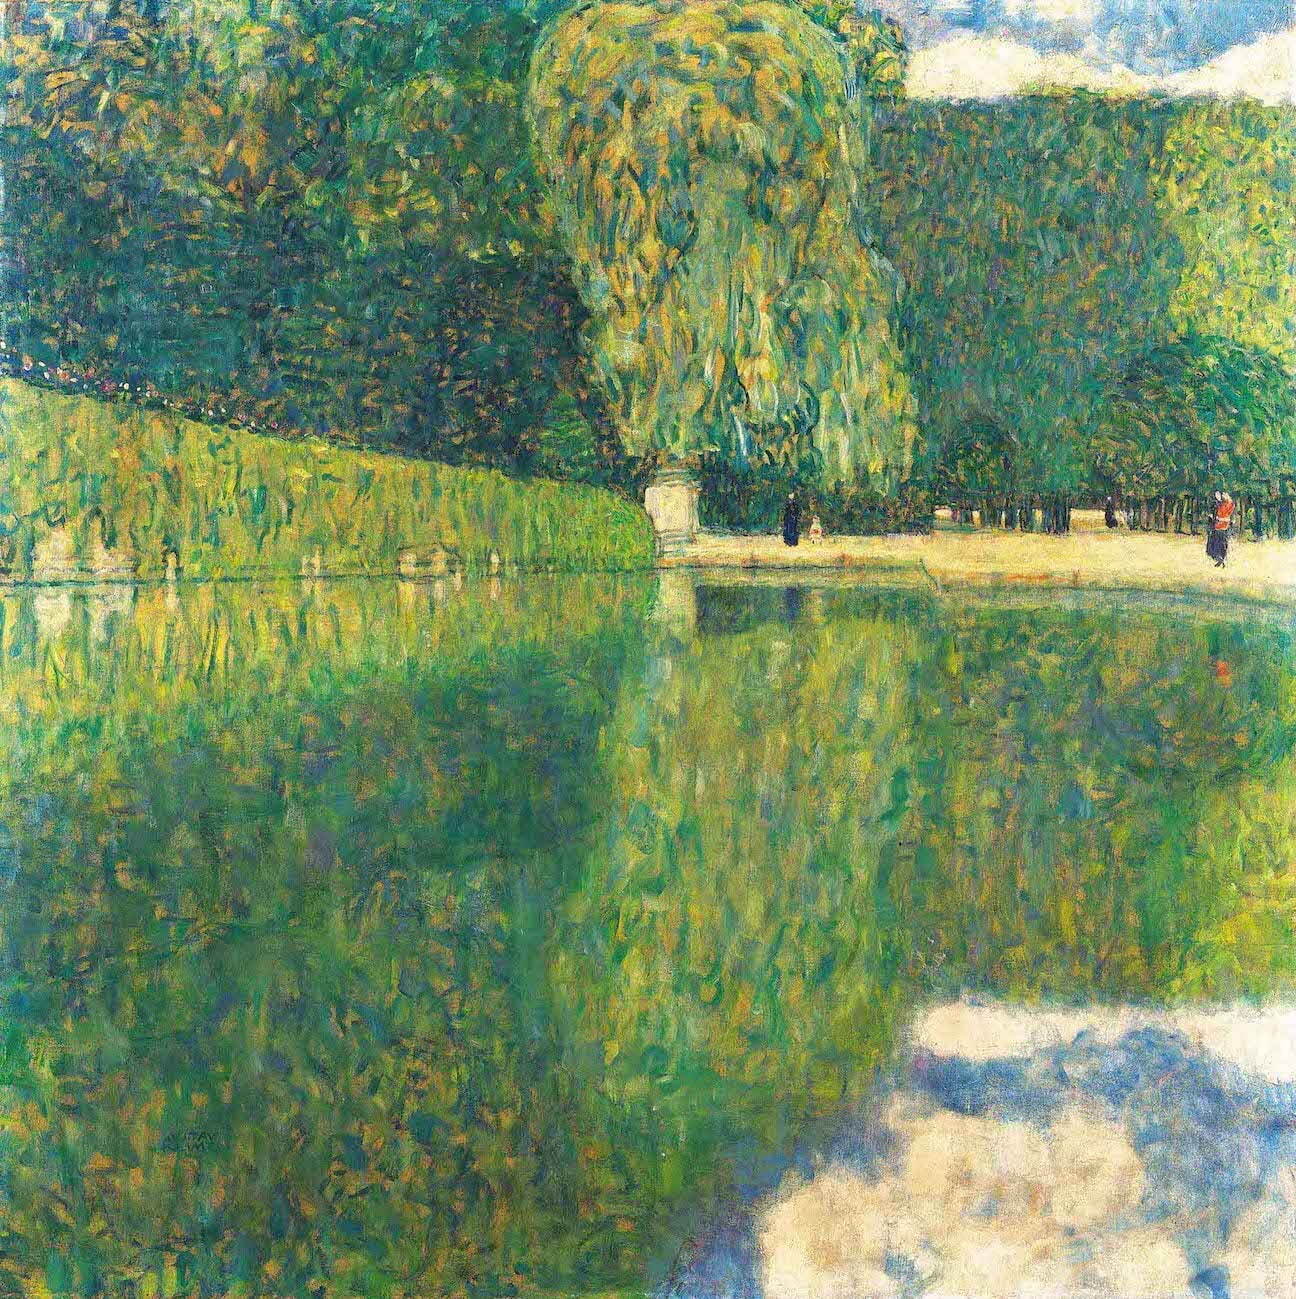 グスタフ・クリムト 《シェーンブルン庭園風景》 1916年　レオポルド美術館に寄託(個人蔵)
Leopold Museum, Vienna